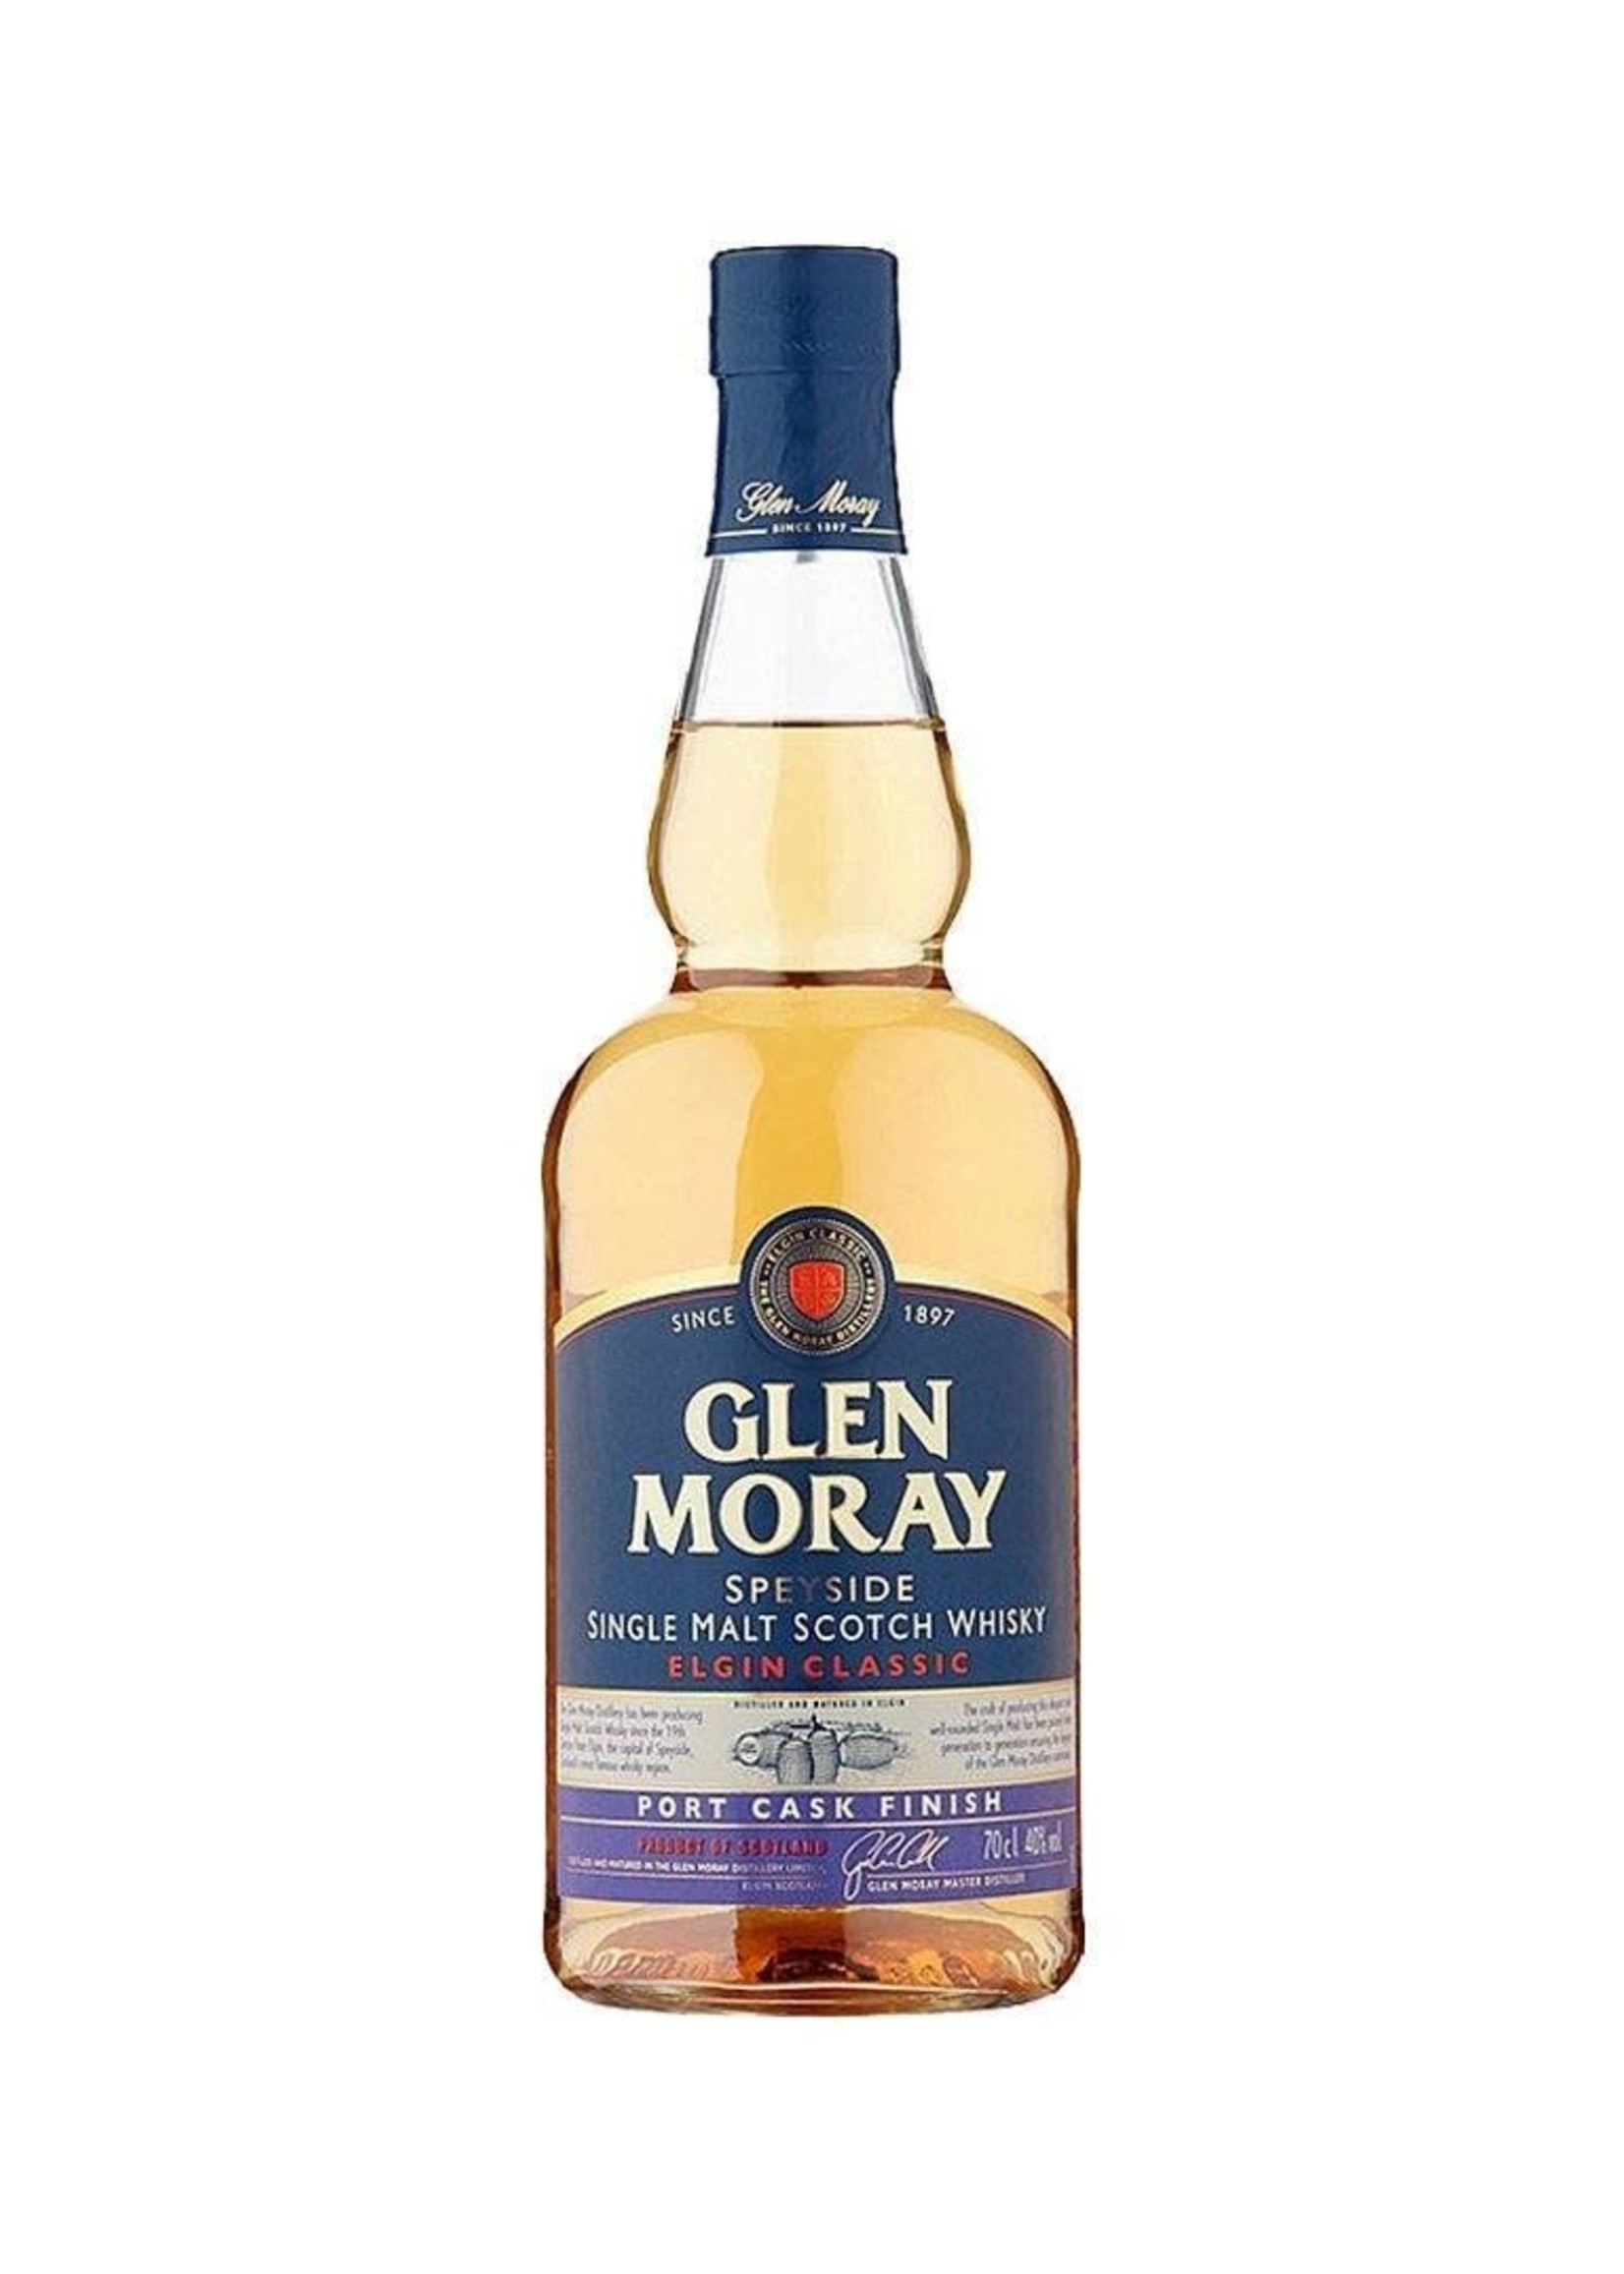 Glen Moray Glen Moray / Port Cask Finish Single Malt Scotch Whisky 40% abv / 750mL